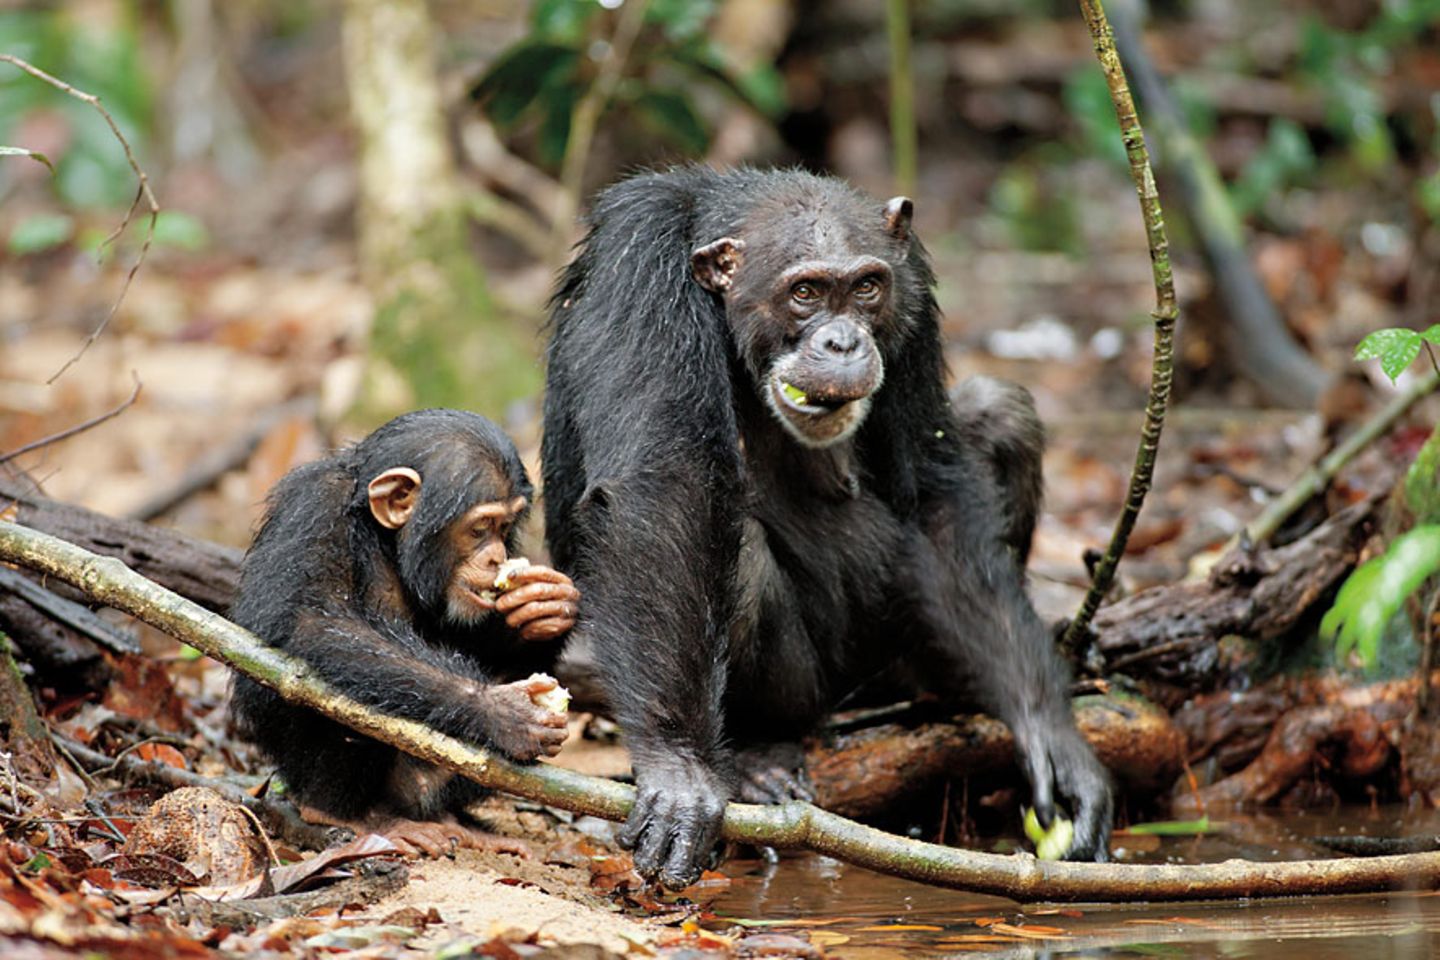 INTERVIEW: Kinostart: "Schimpansen" - Bild 5